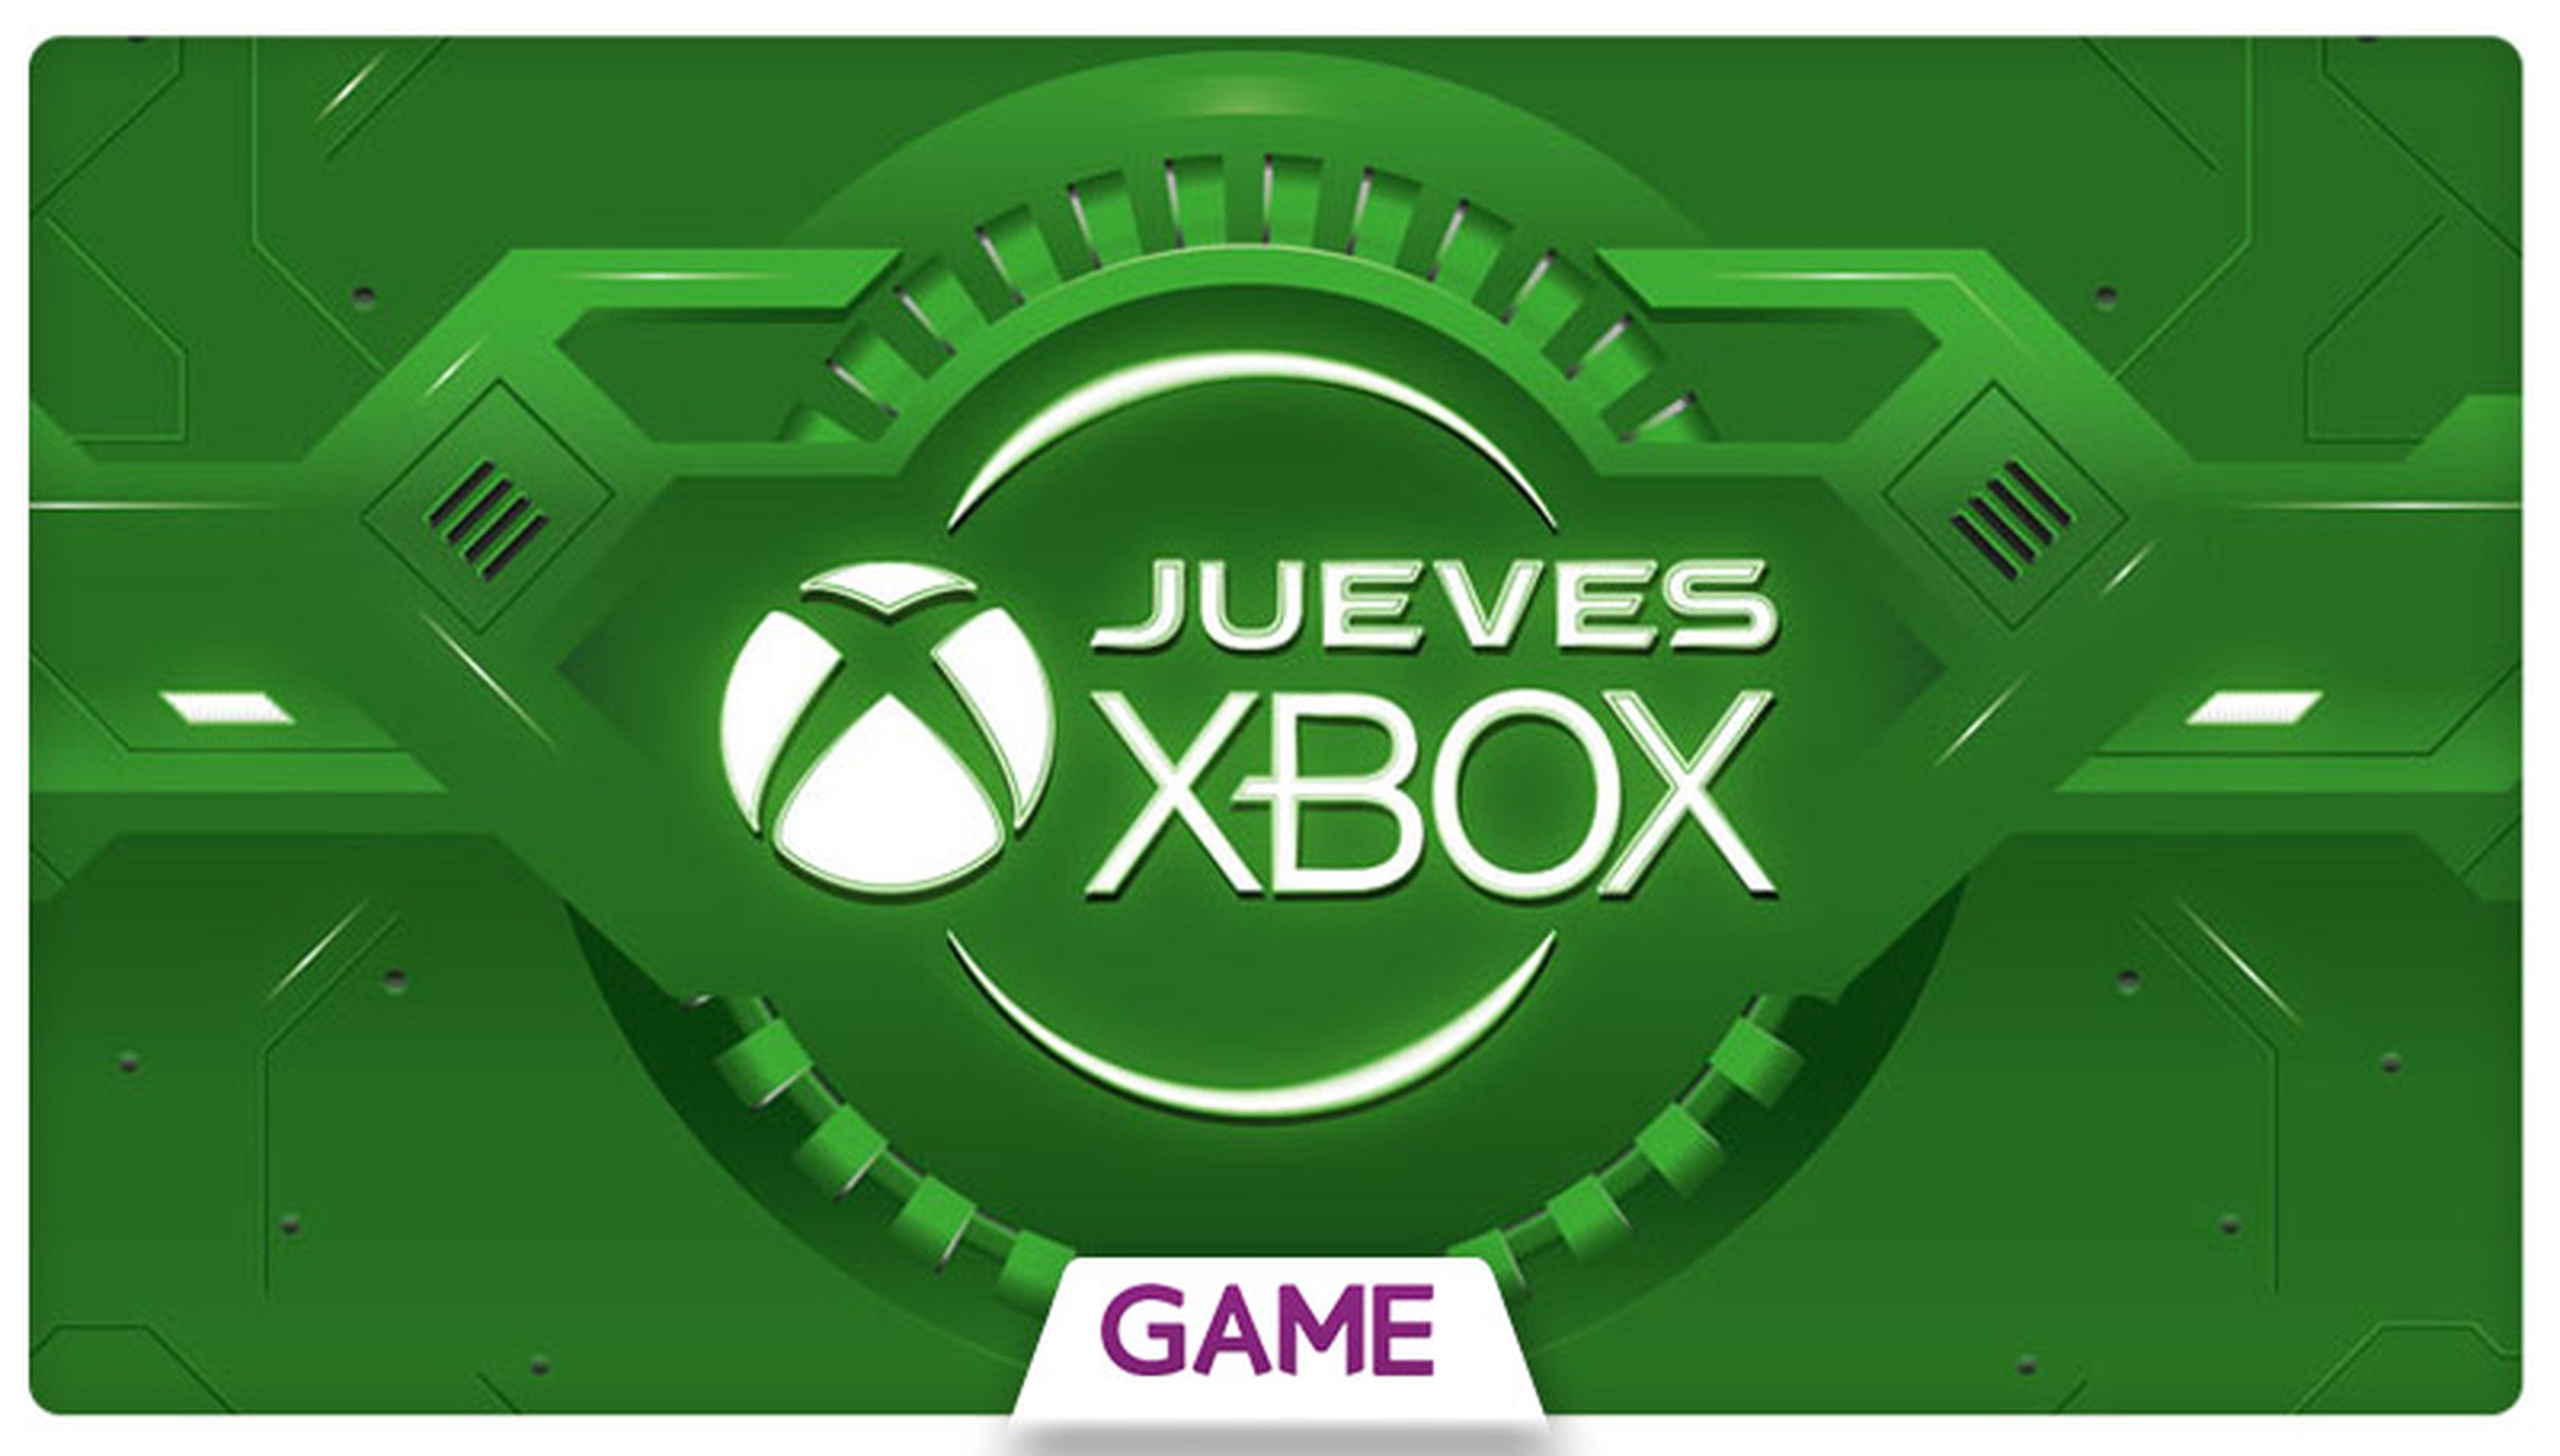 Jueves Xbox en GAME: Decimosexta semana de ofertas